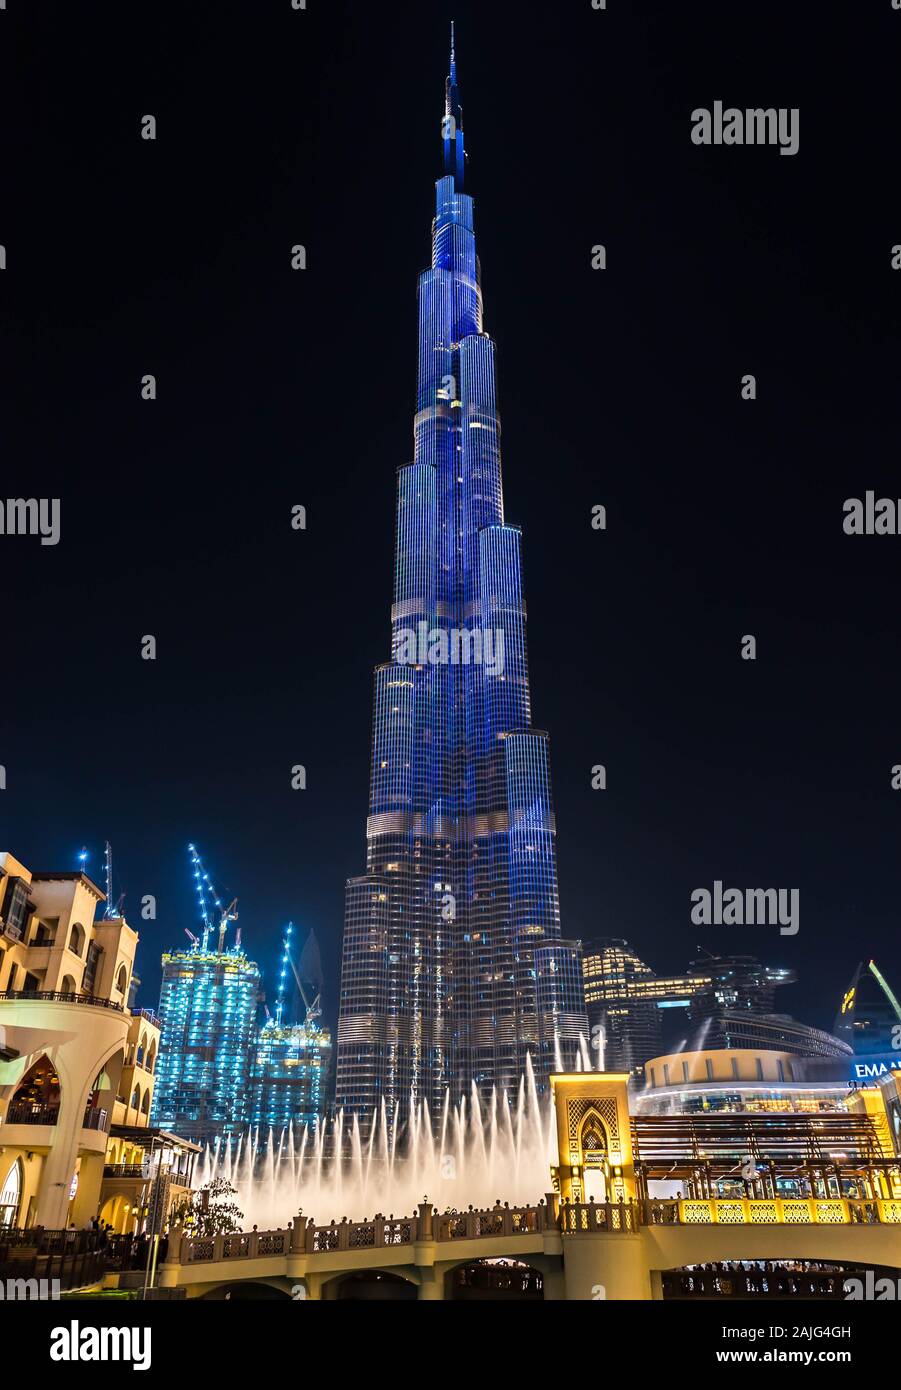 Dubaï, Emirats Arabes Unis : futuriste étonnante lumière sur le Burj Khalifa, l'immeuble le plus haut gratte-ciel du monde, illuminée par nuit Banque D'Images